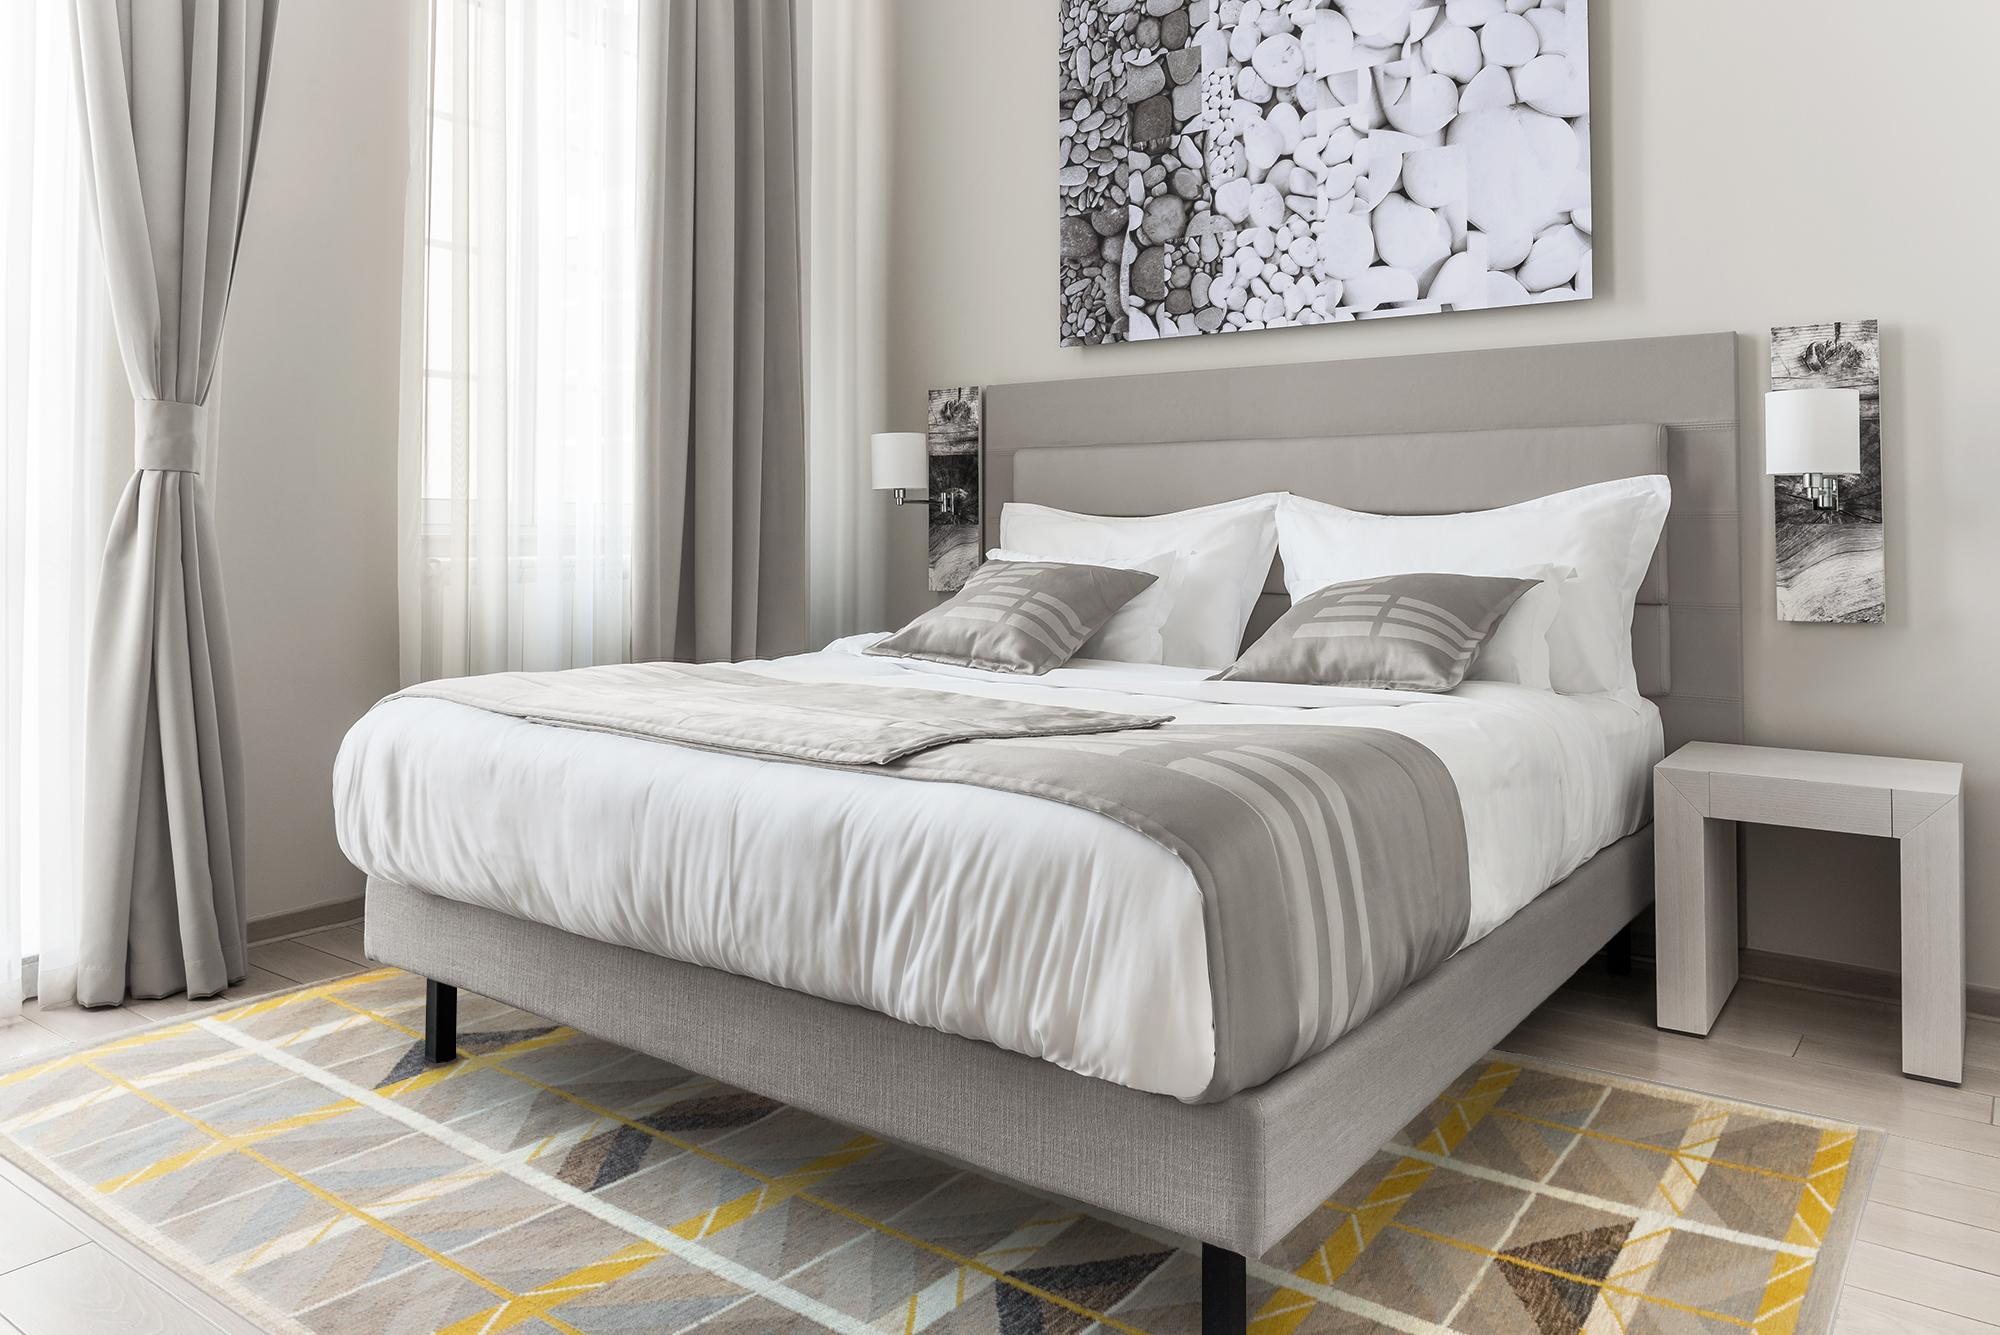 Schöner zeitgenössischer Teppich im skandinavischen Stil, handgeknüpft aus Wolle mit einem grauen Feld, elfenbeinfarbenen und gelben Akzenten in einem geometrischen Allover-Muster.

  Dieser Teppich misst 10' 4